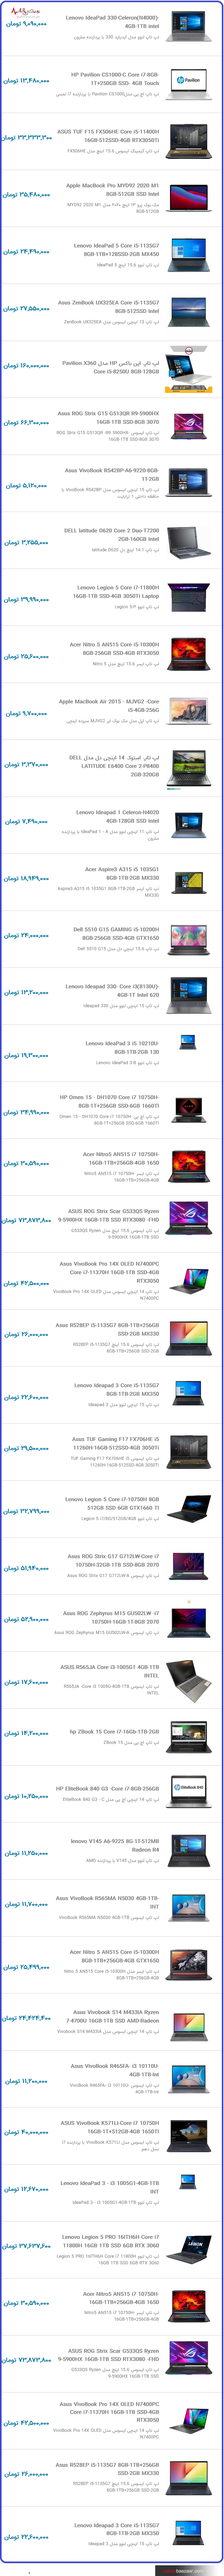 قیمت روز لپ تاپ ایسوس و لنوو امروز در بازار تهران ۲۳ دی ۱۴۰۰